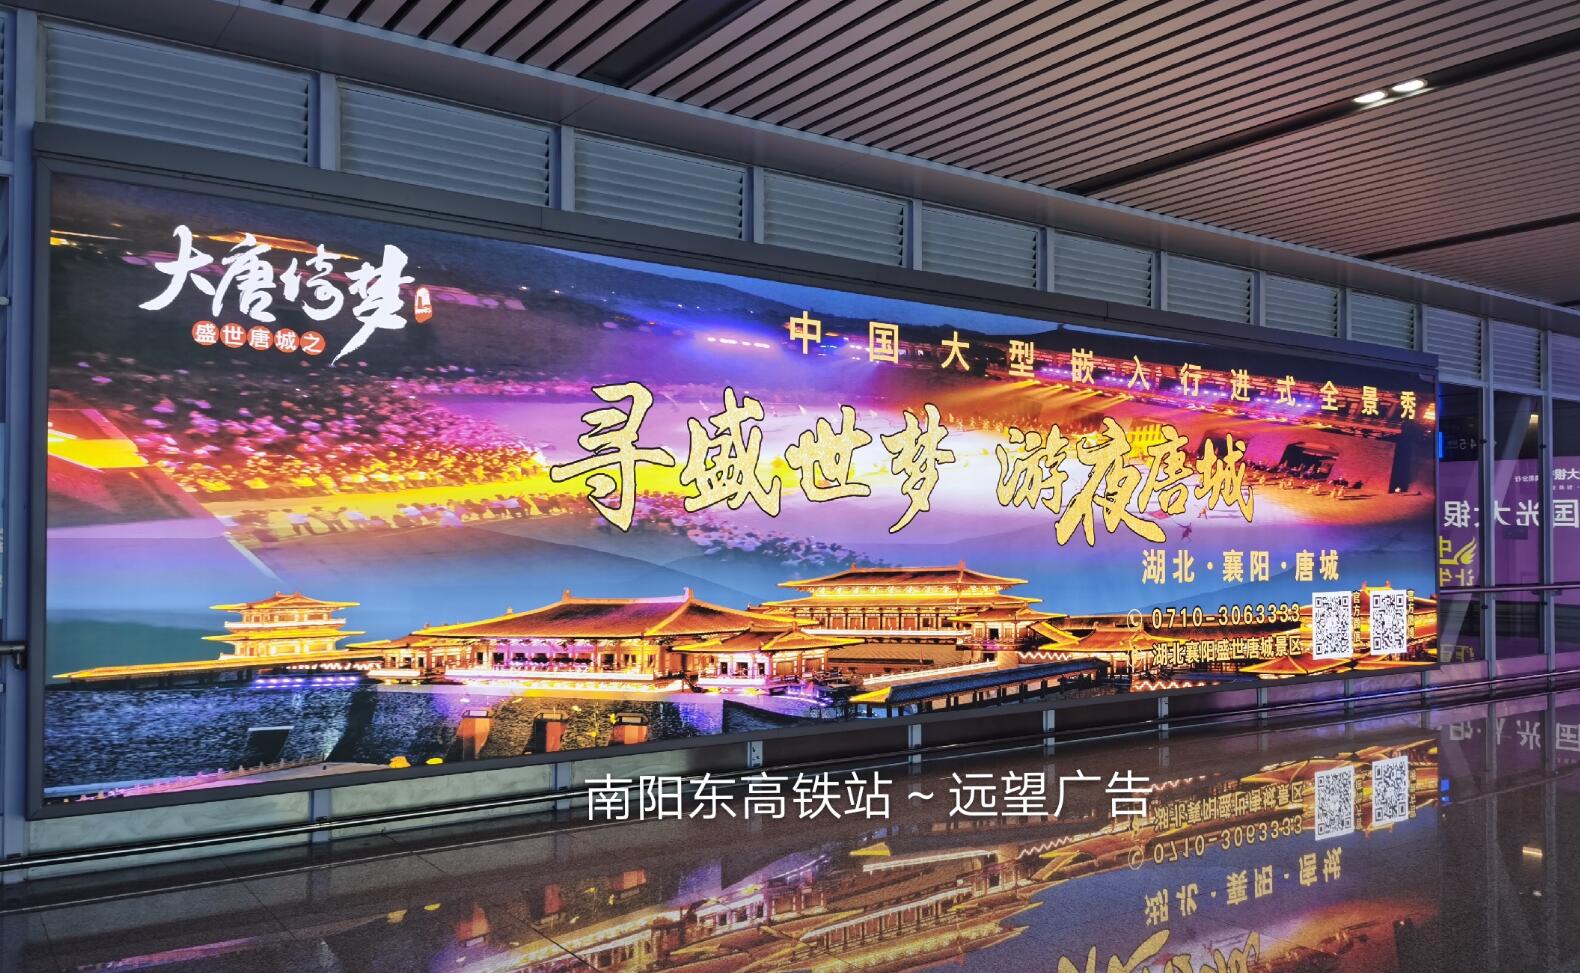 湖北远望广告为唐城旅游景区发布湖北和河南高铁站广告